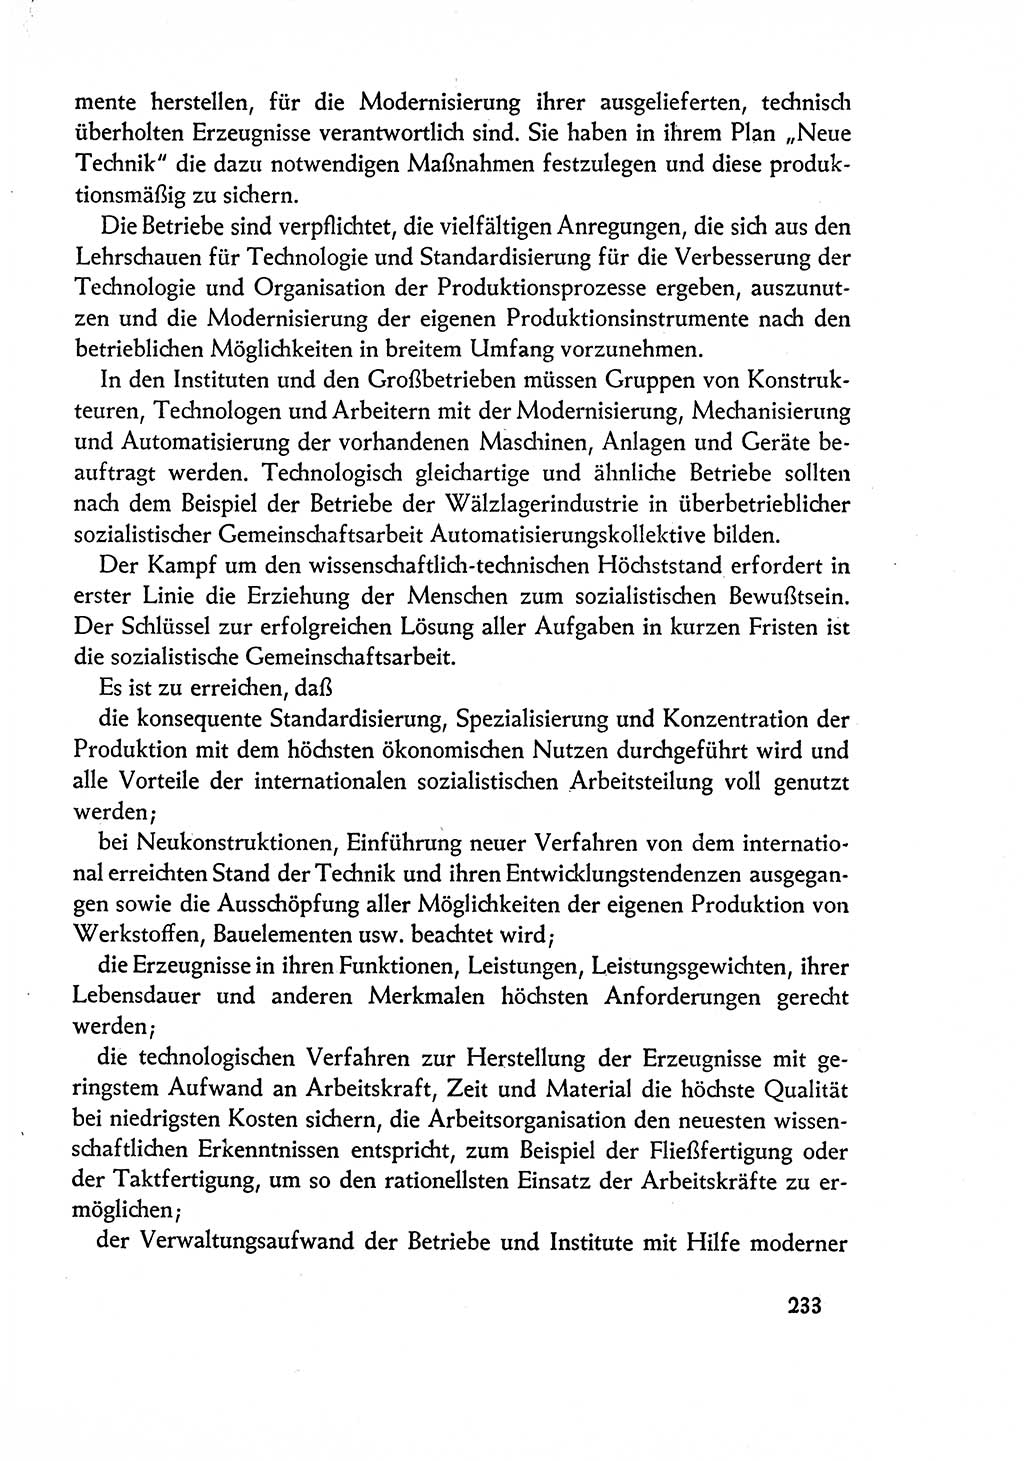 Dokumente der Sozialistischen Einheitspartei Deutschlands (SED) [Deutsche Demokratische Republik (DDR)] 1960-1961, Seite 233 (Dok. SED DDR 1960-1961, S. 233)